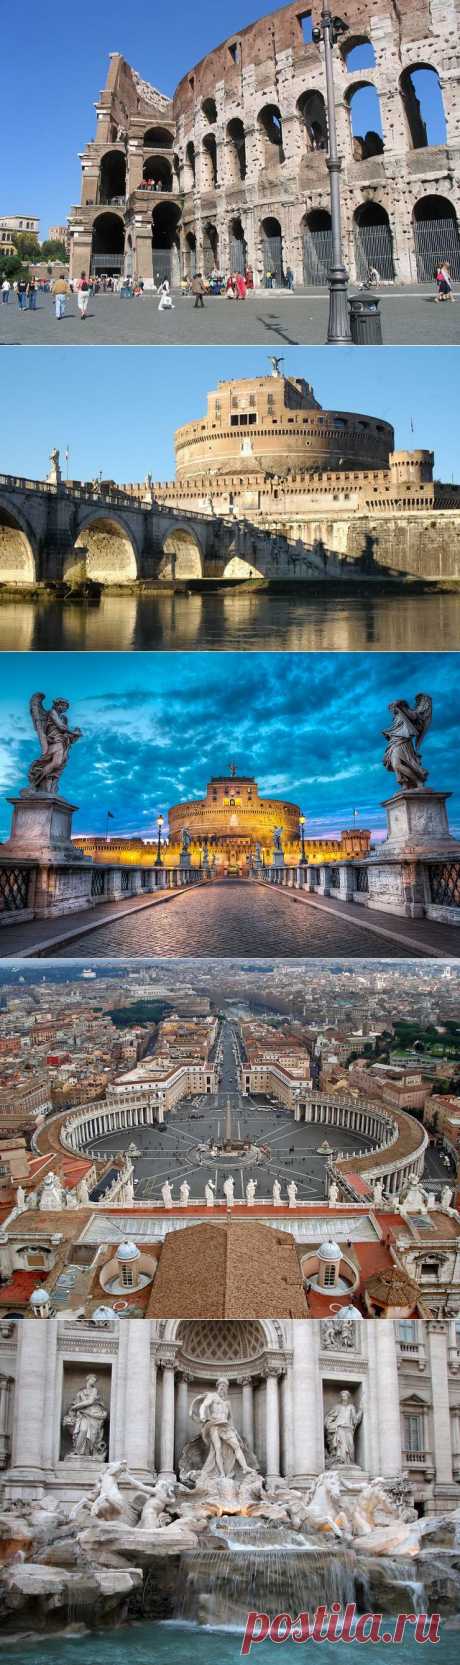 Достопримечательности Рима | OMyWorld - все достопримечательности мира